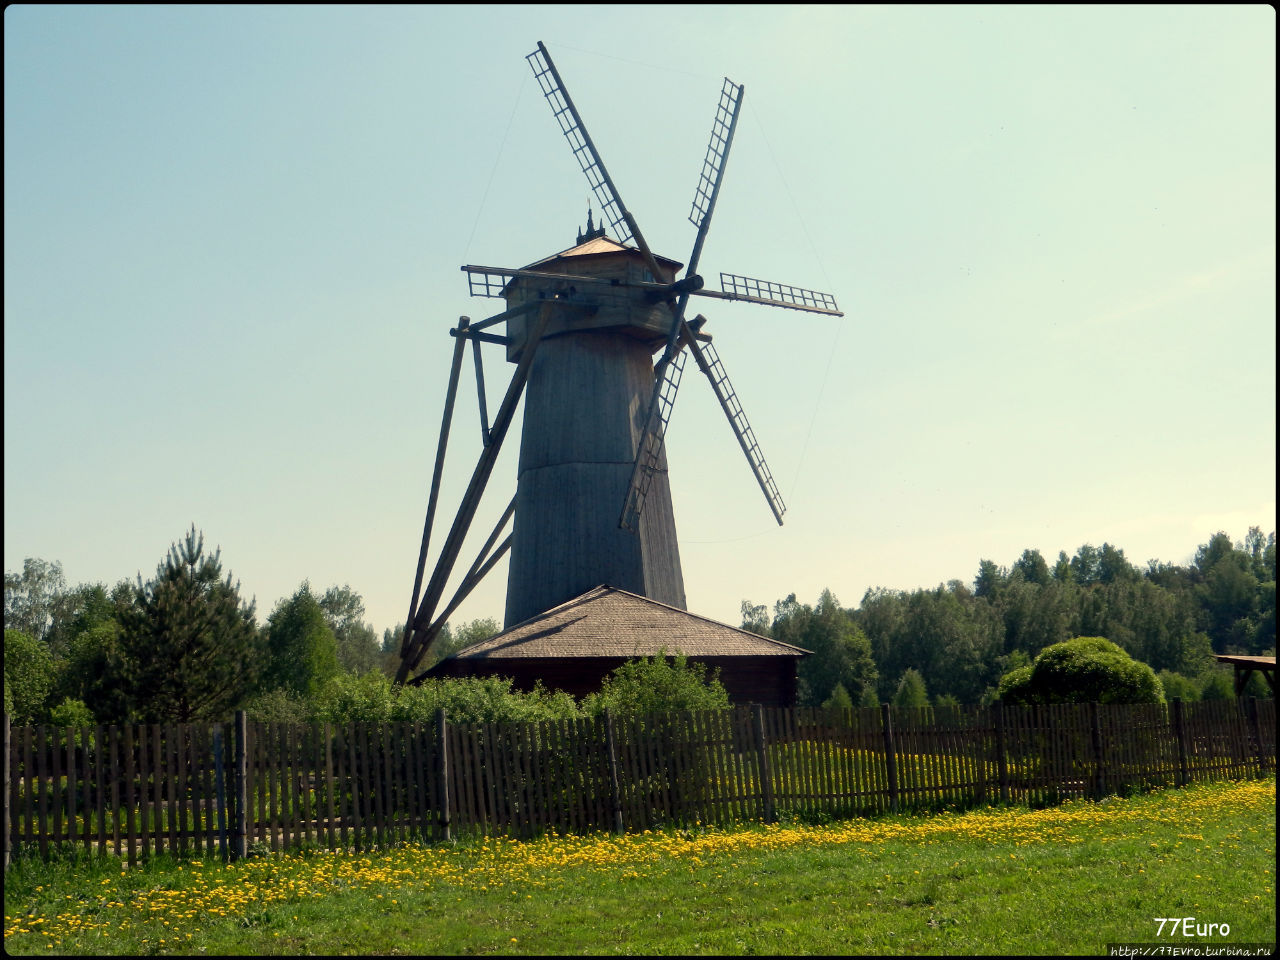 Ветряная мельница.
XIX век Истра, Россия